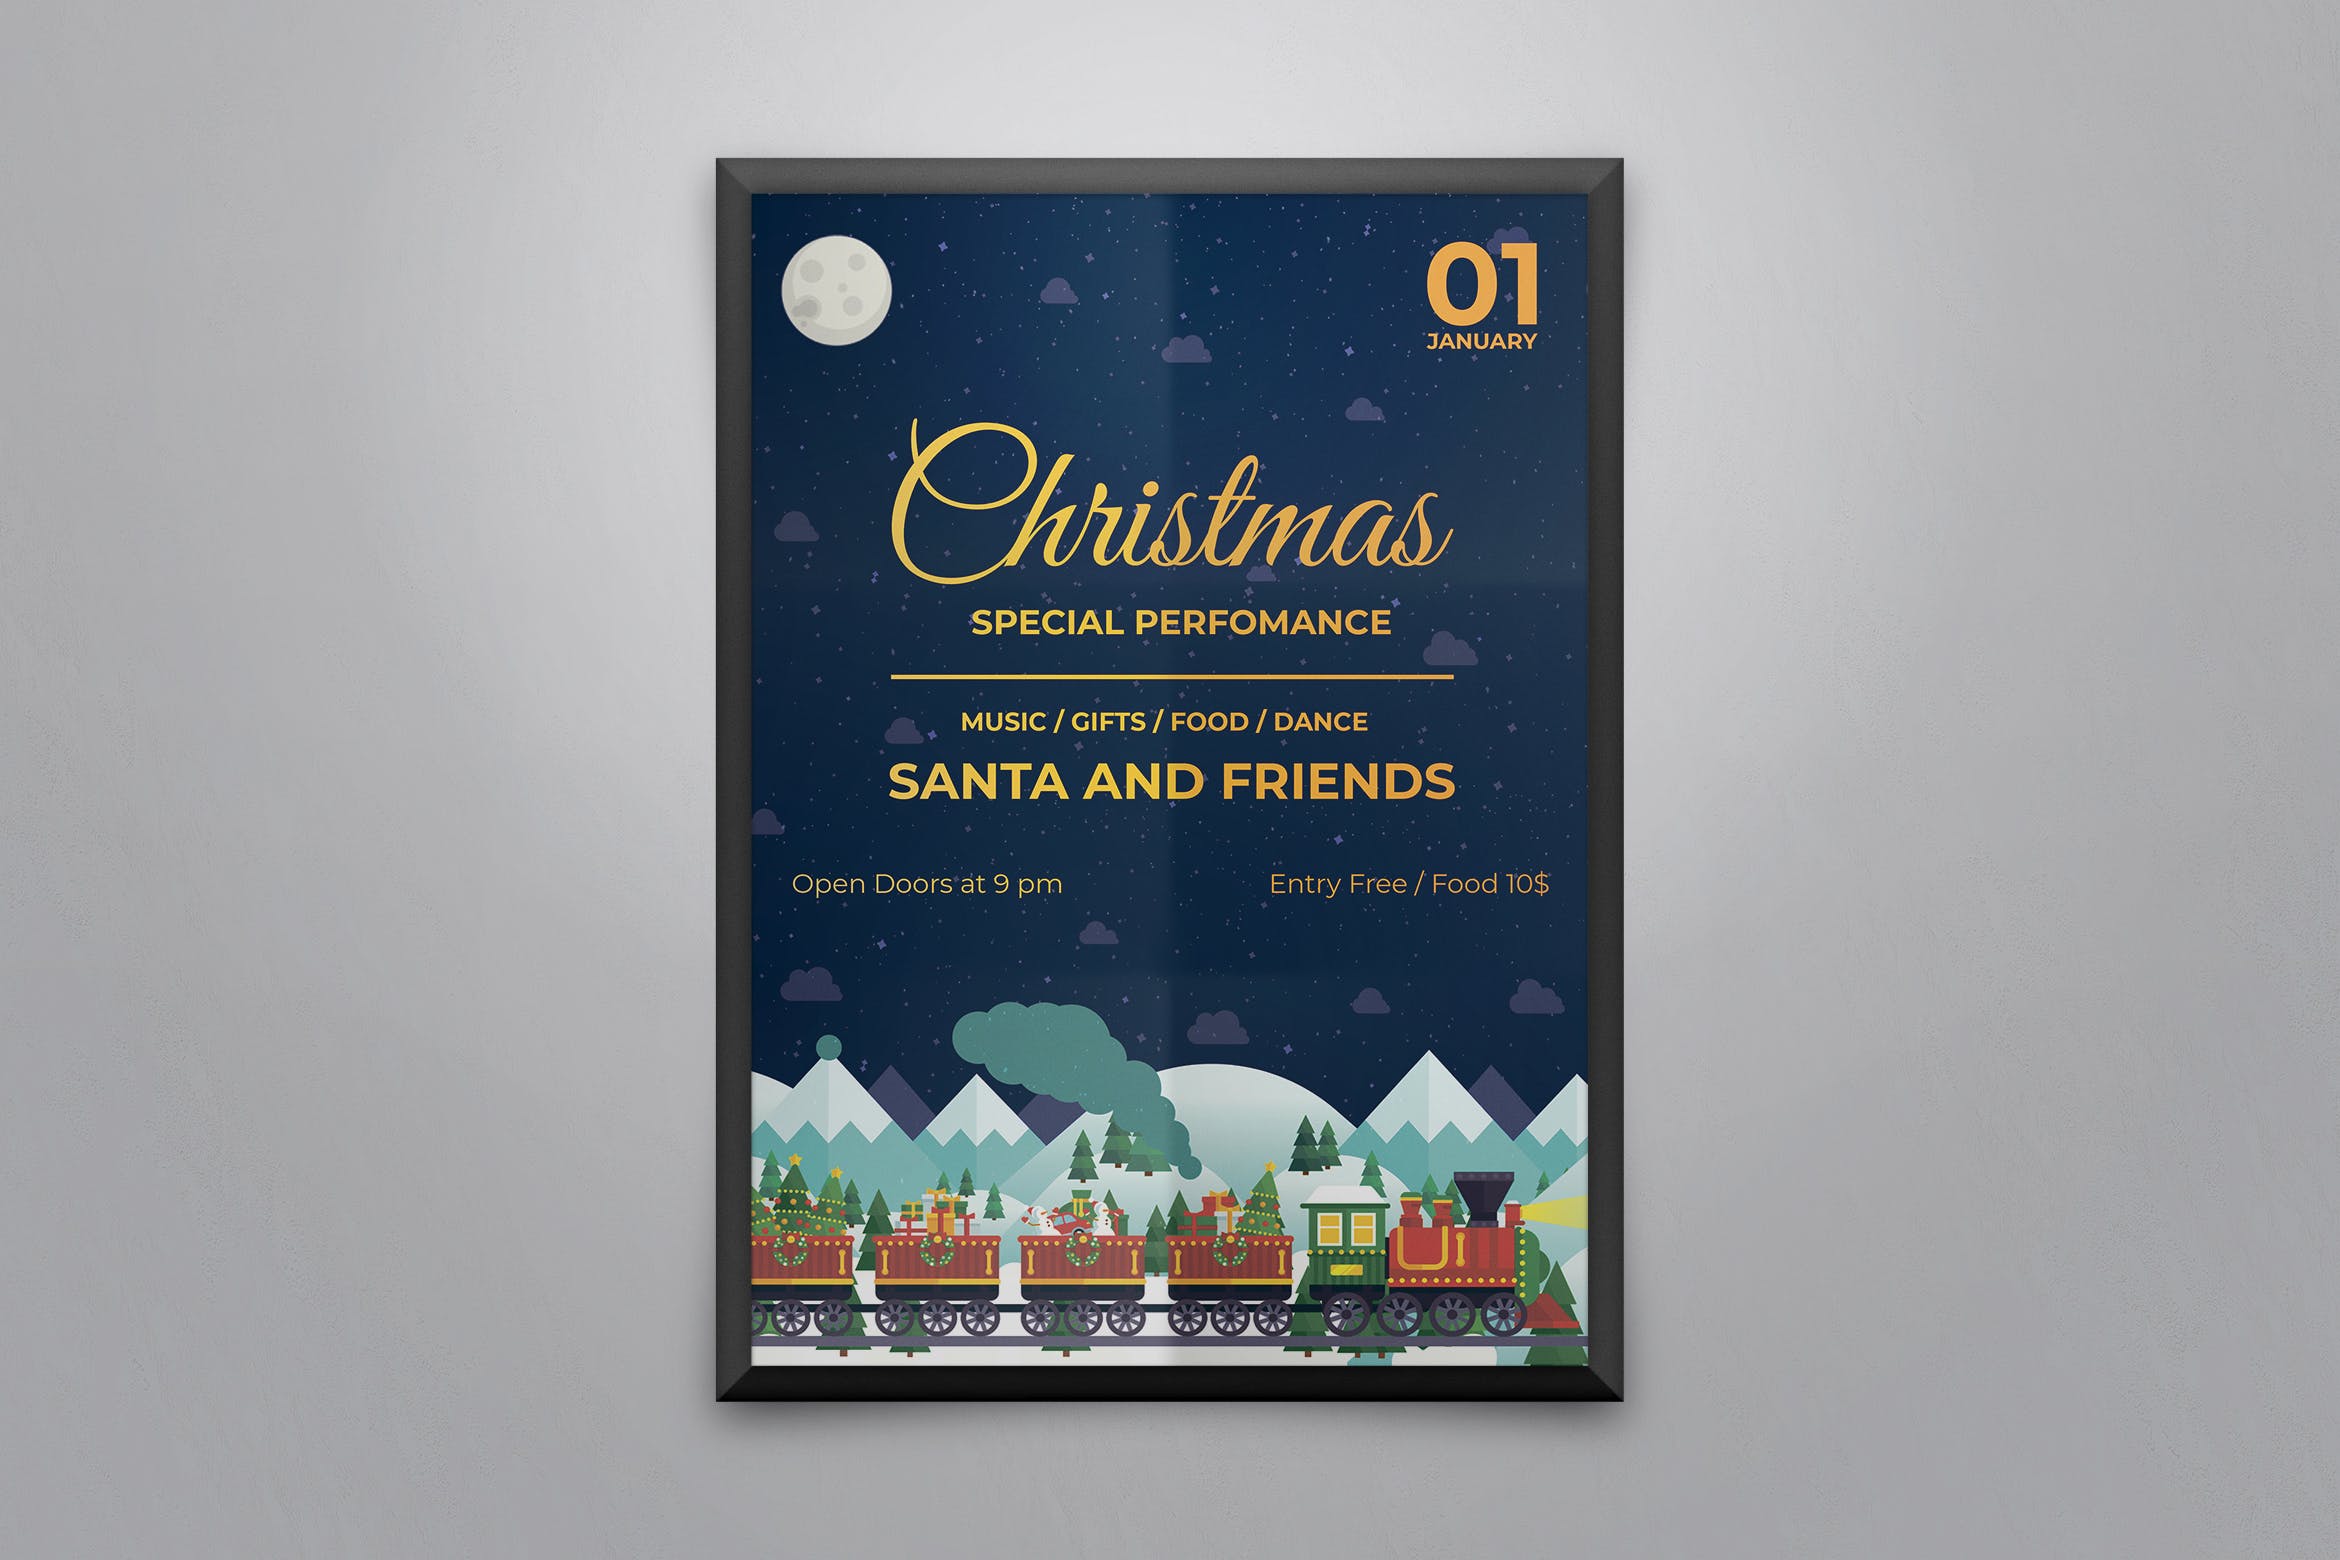 圣诞列车圣诞节主题活动海报传单设计模板 Christmas Party Flyer and Poster Template插图